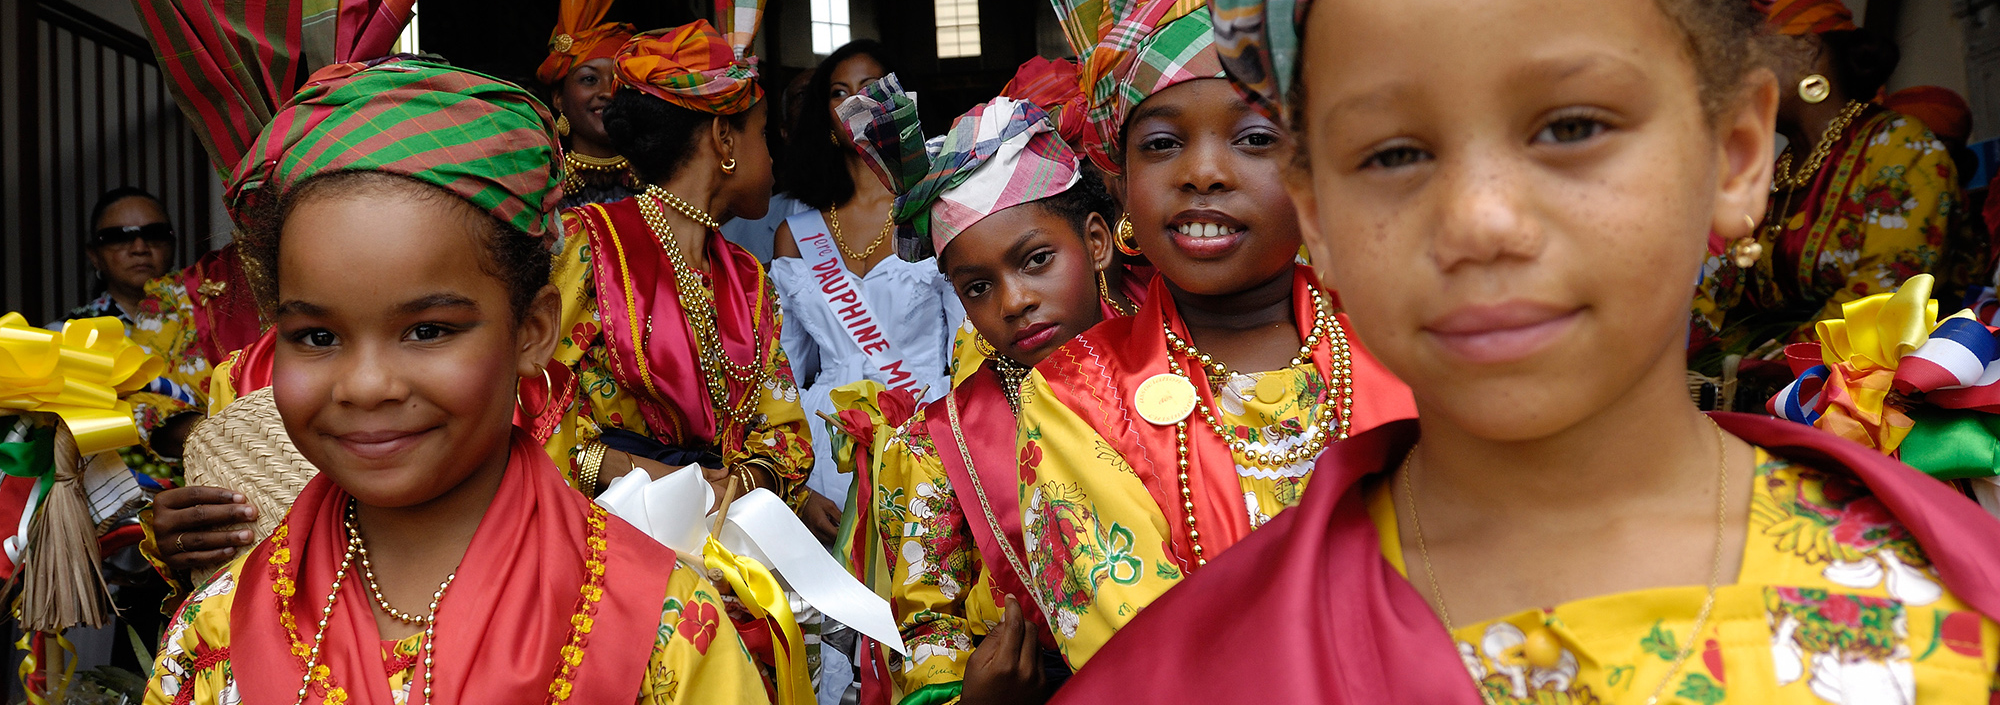 Kinder in bunter Tracht beim Küchenfestival auf Guadeloupe